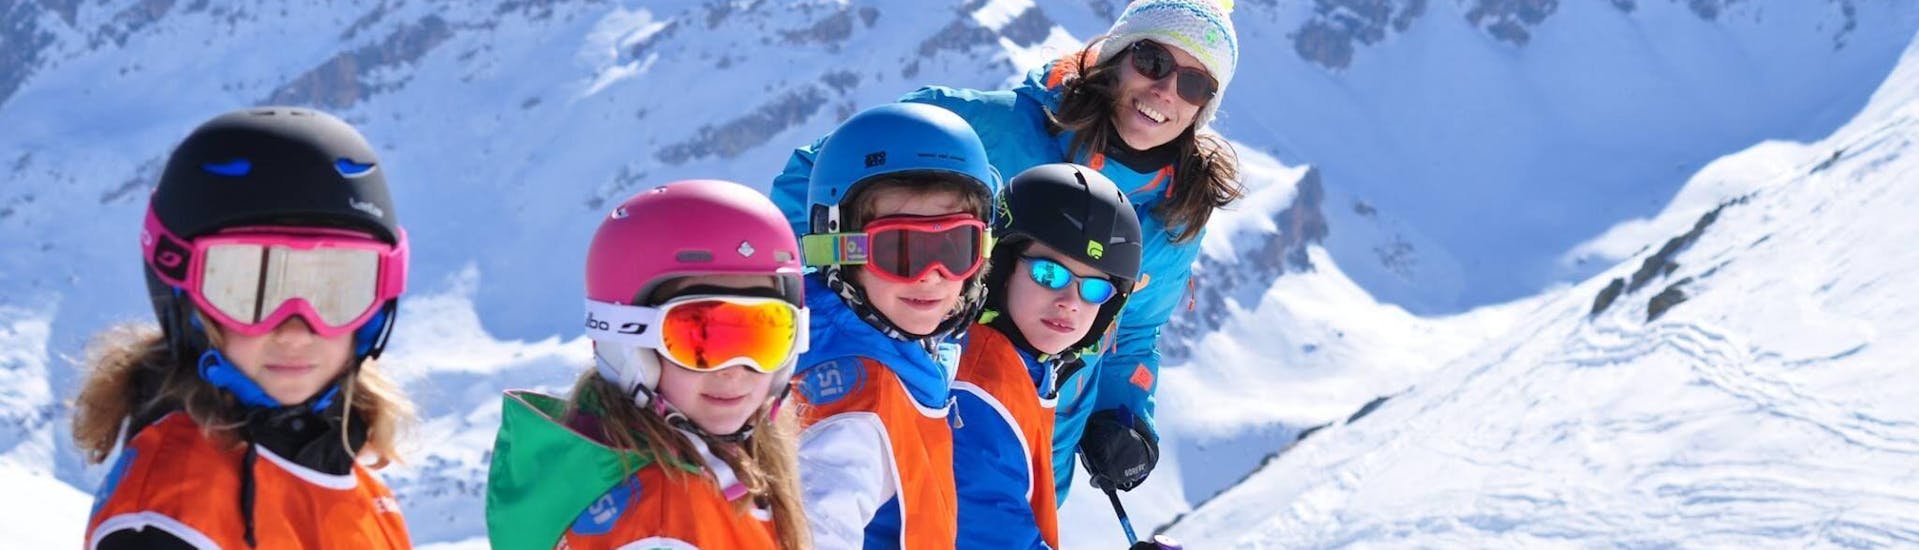 Lezioni di sci per bambini di tutti i livelli (4-12 anni).